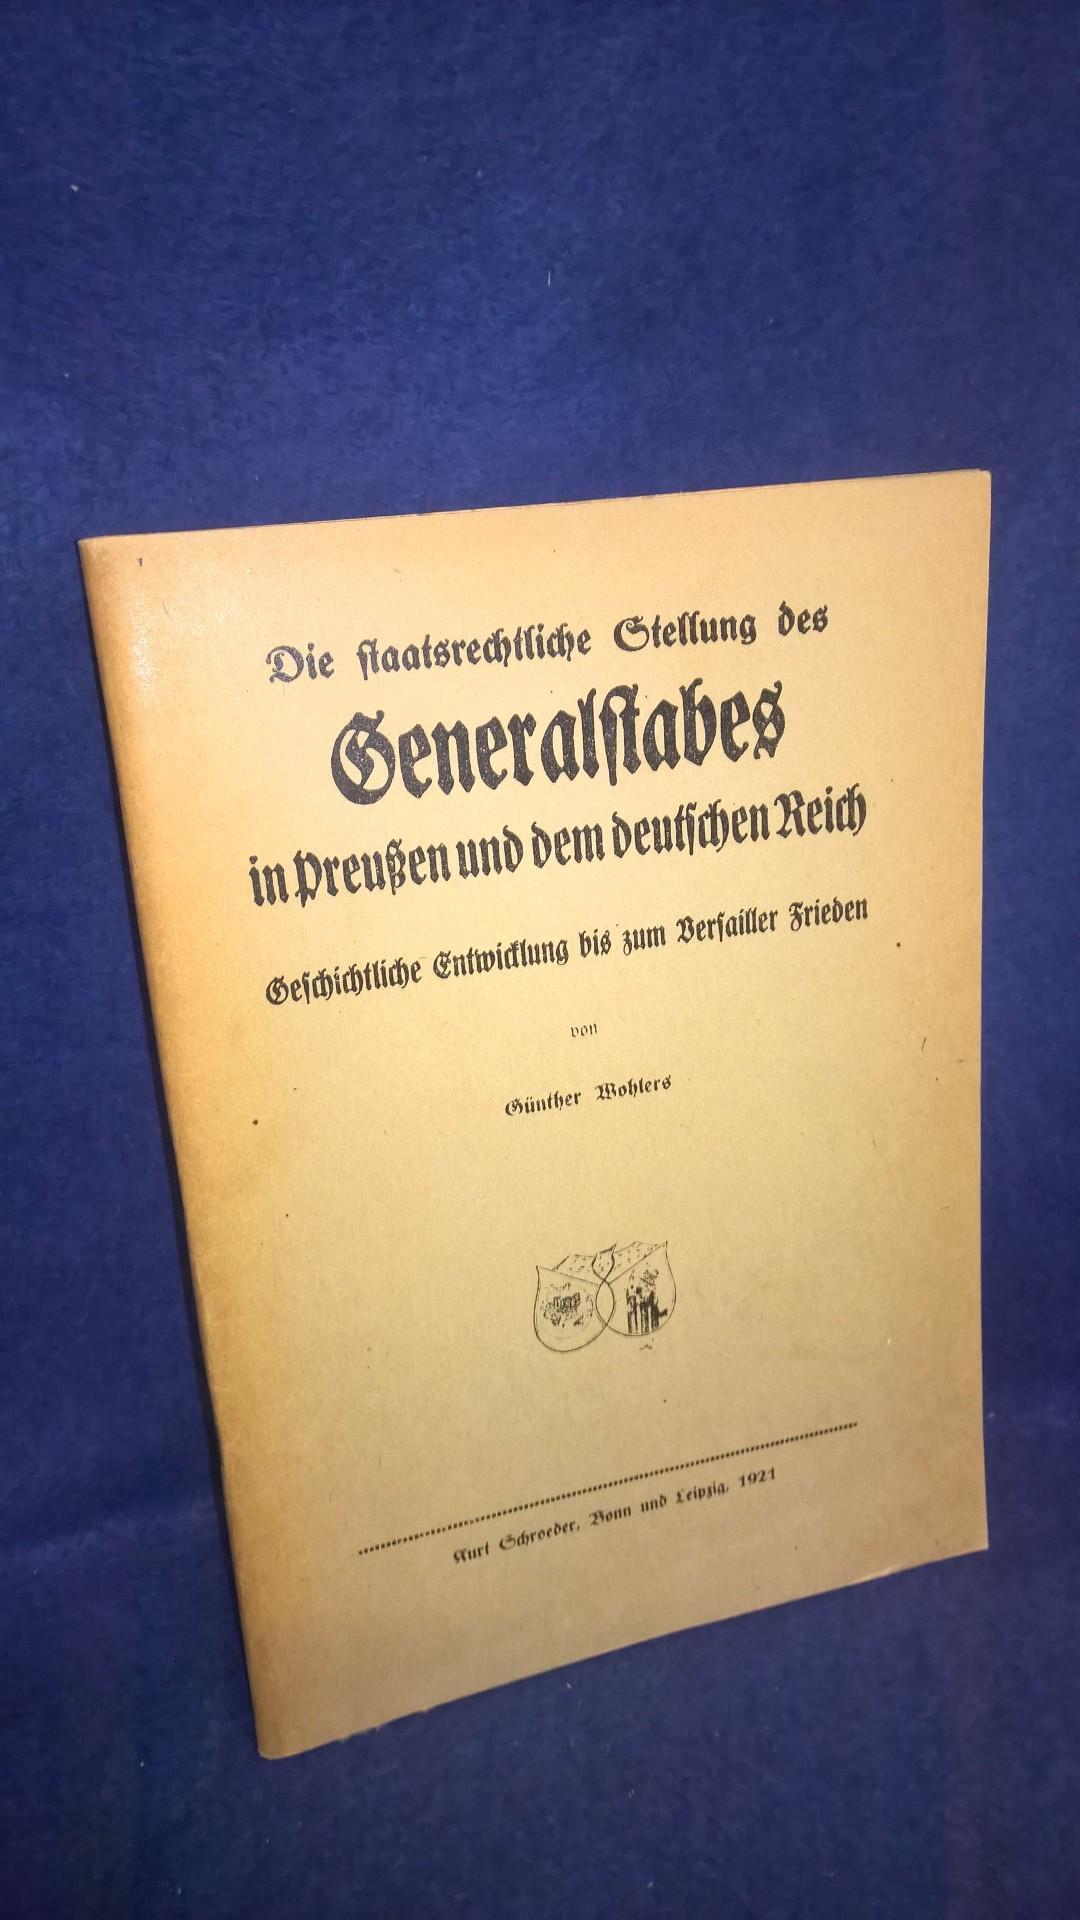 Die staatsrechtliche Stellung des Generalstabes in Preußen und dem deutschen Reich. Geschichtliche Entwicklung bis zum Versailler Frieden. 